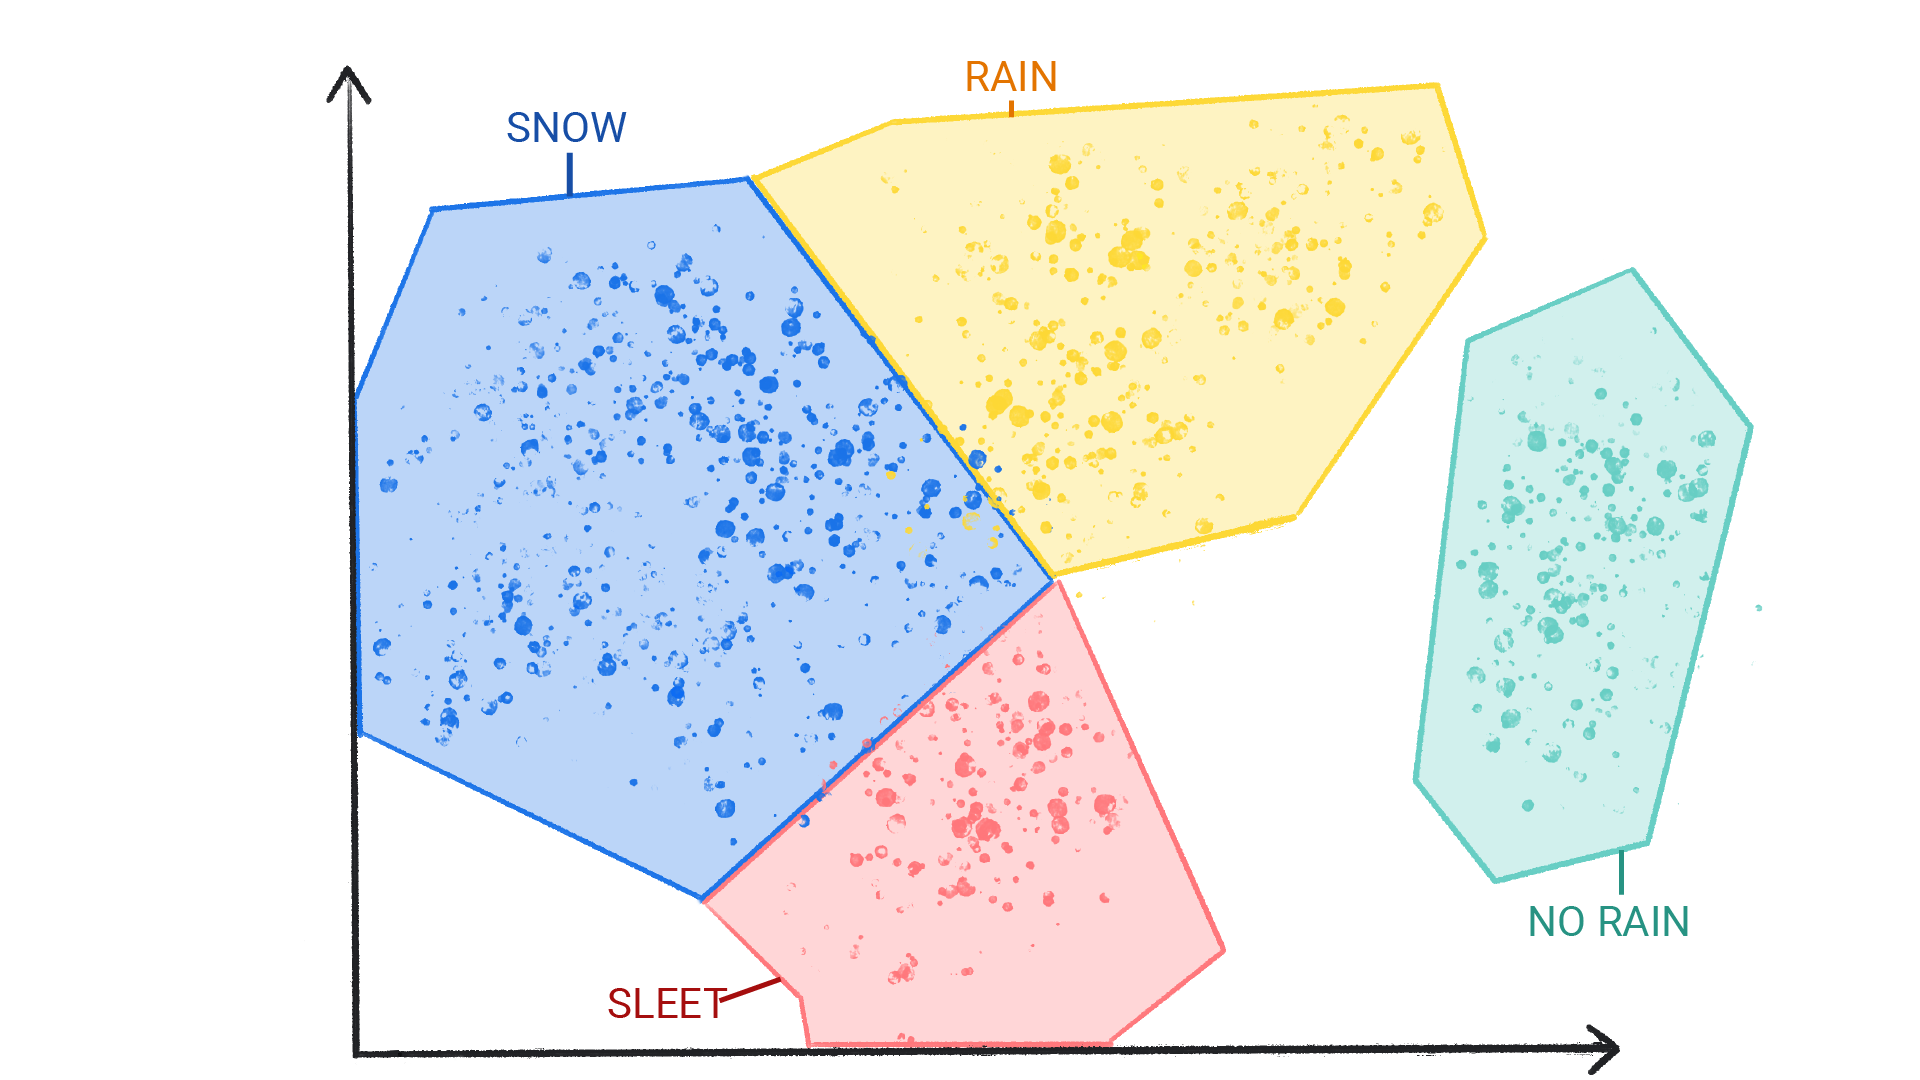 صورة تعرض نقاطًا ملوّنة في مجموعات عنقودية مصنّفة على أنّها ثلج ومطر وبَرَد، وبدون مطر محاطة بشكل متقارب.